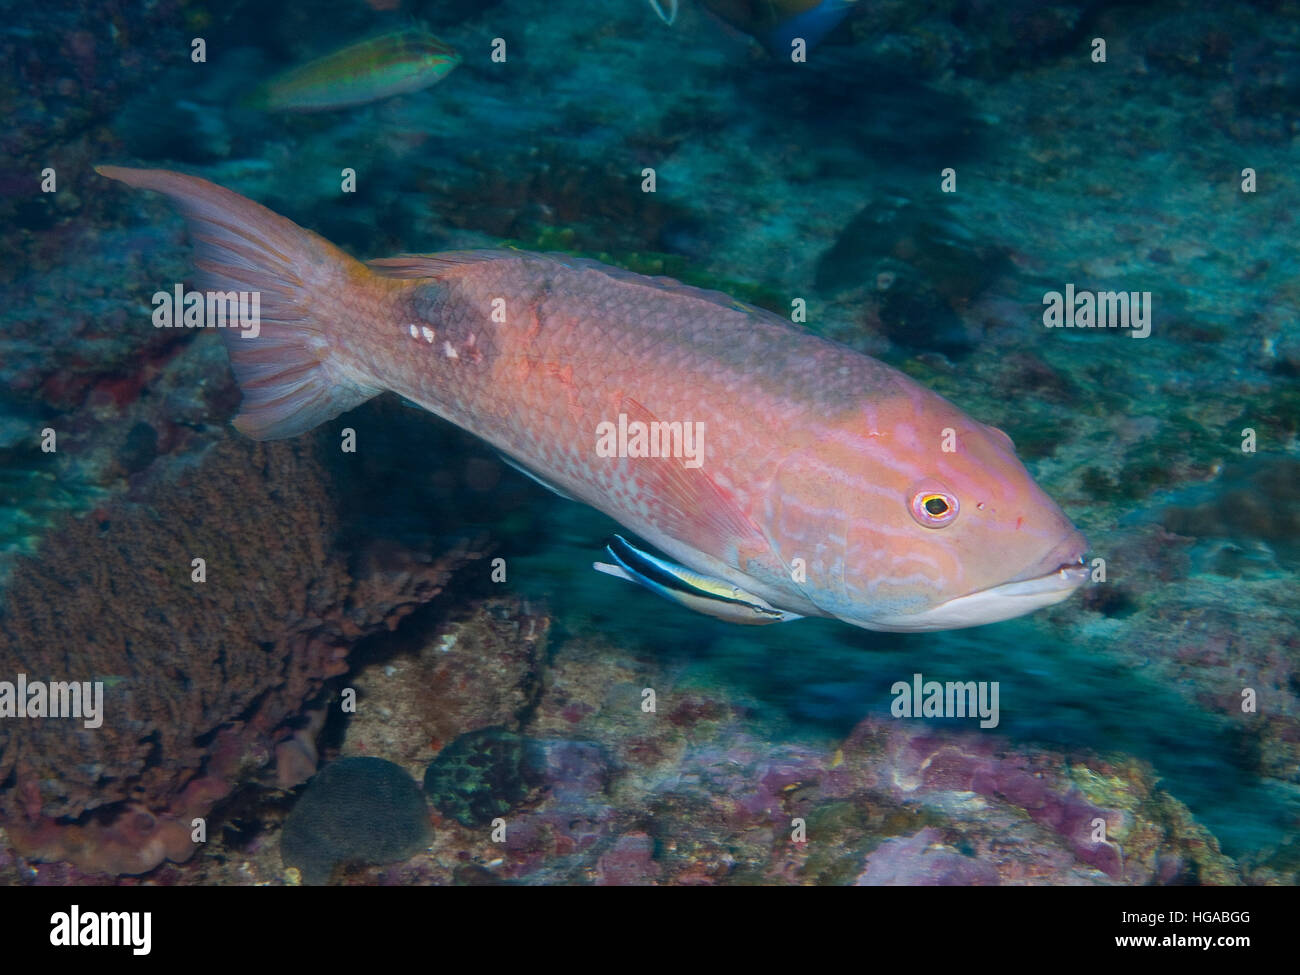 Saddleback Pigfish (Bodianus bilunulatus) Stock Photo